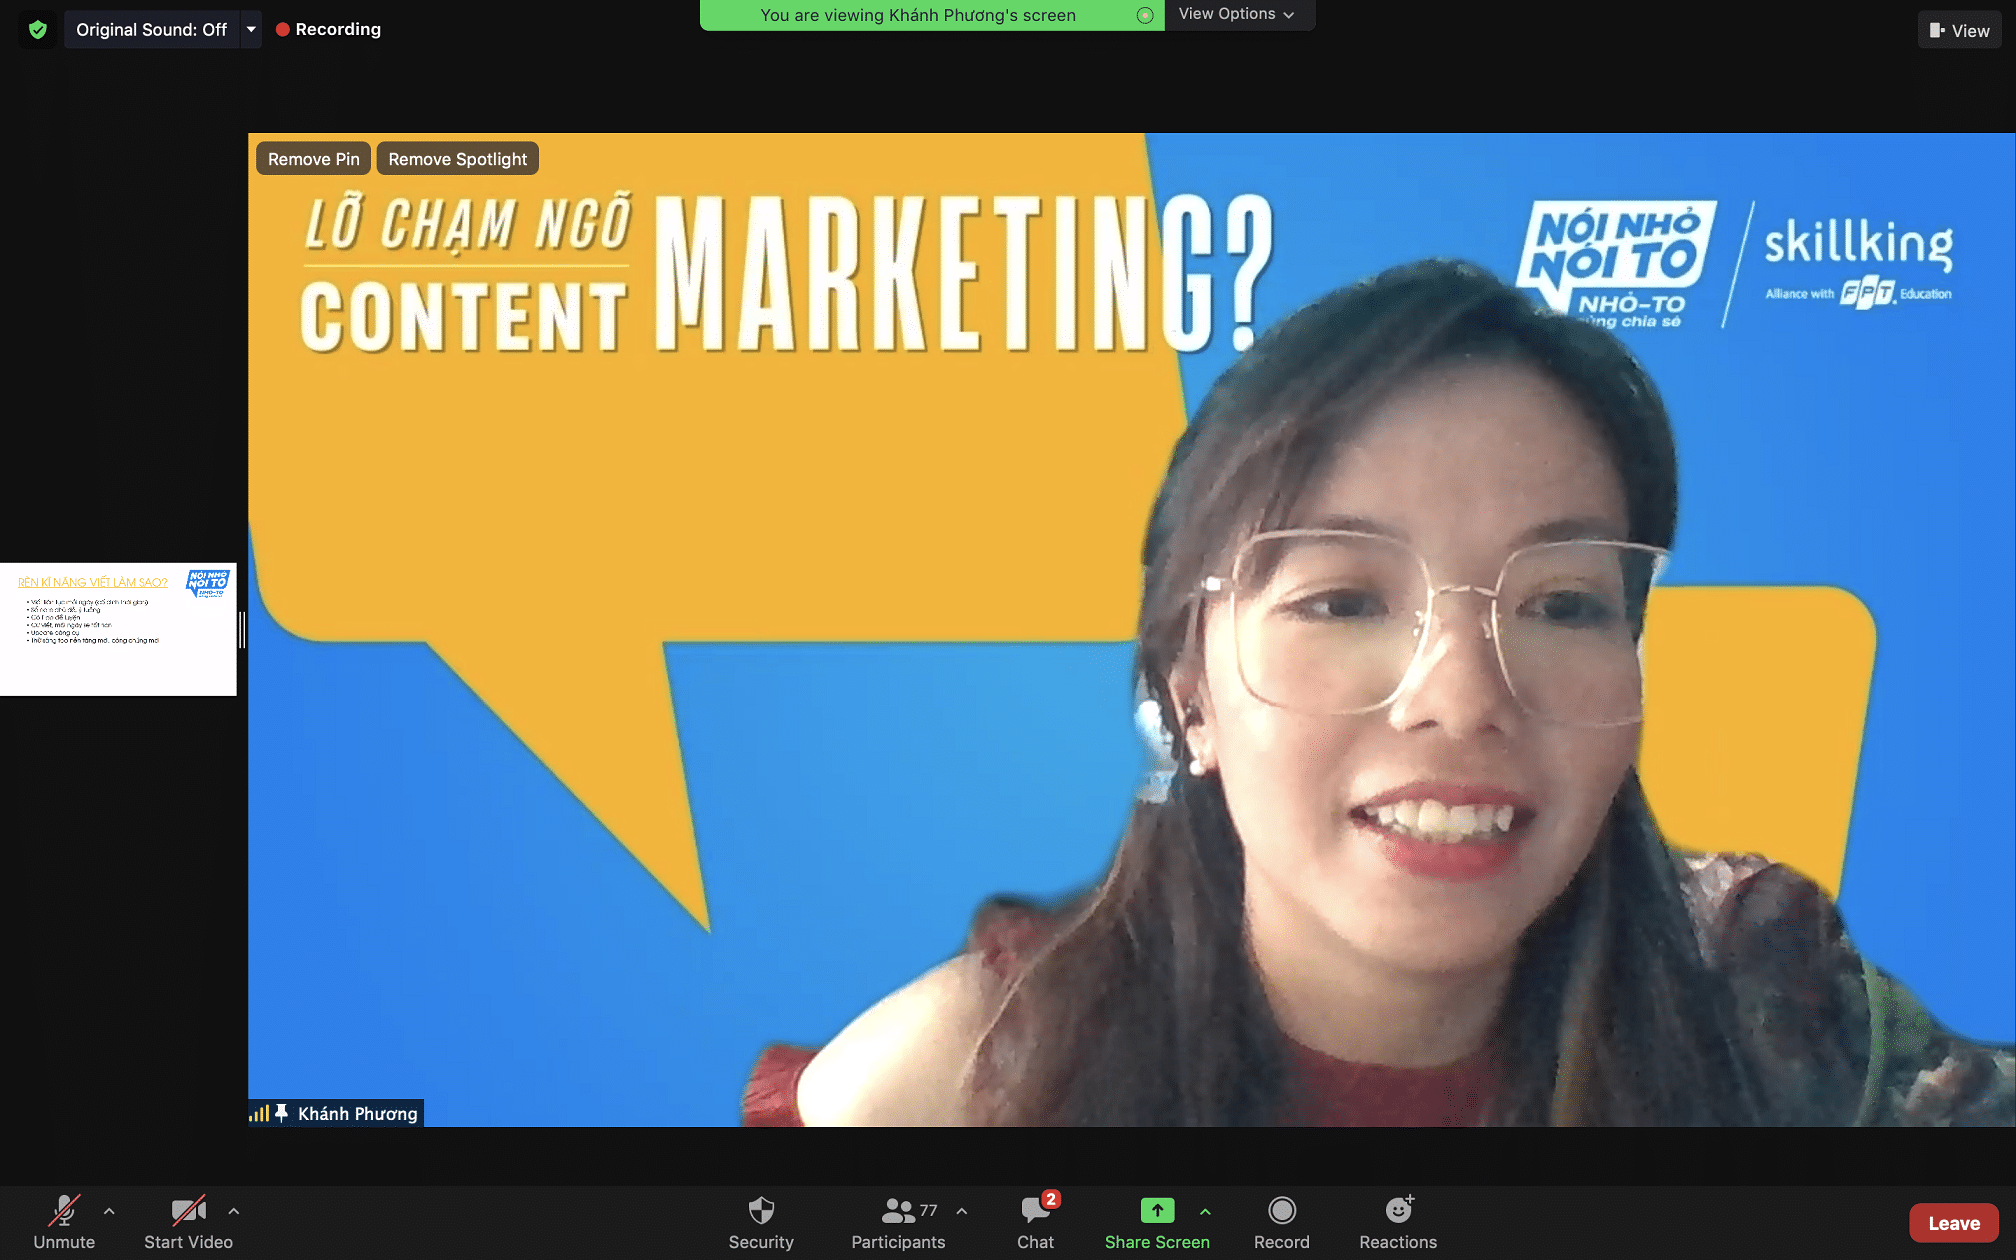 06.Cham ngo content marketing